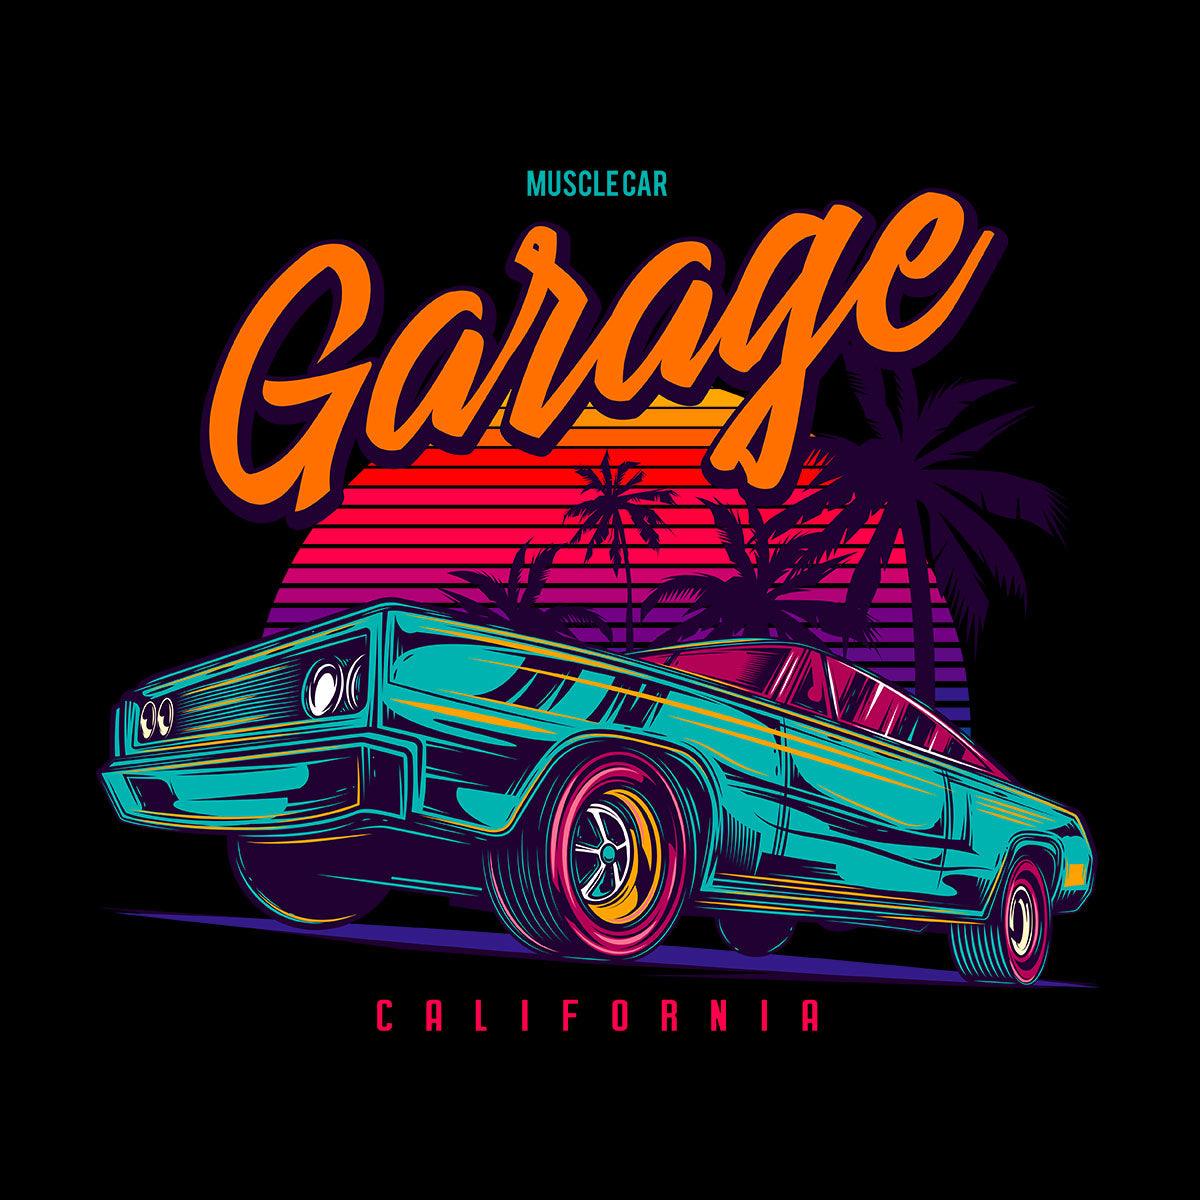 An American muscle car in retro neon style - Garage California - Kuzi Tees